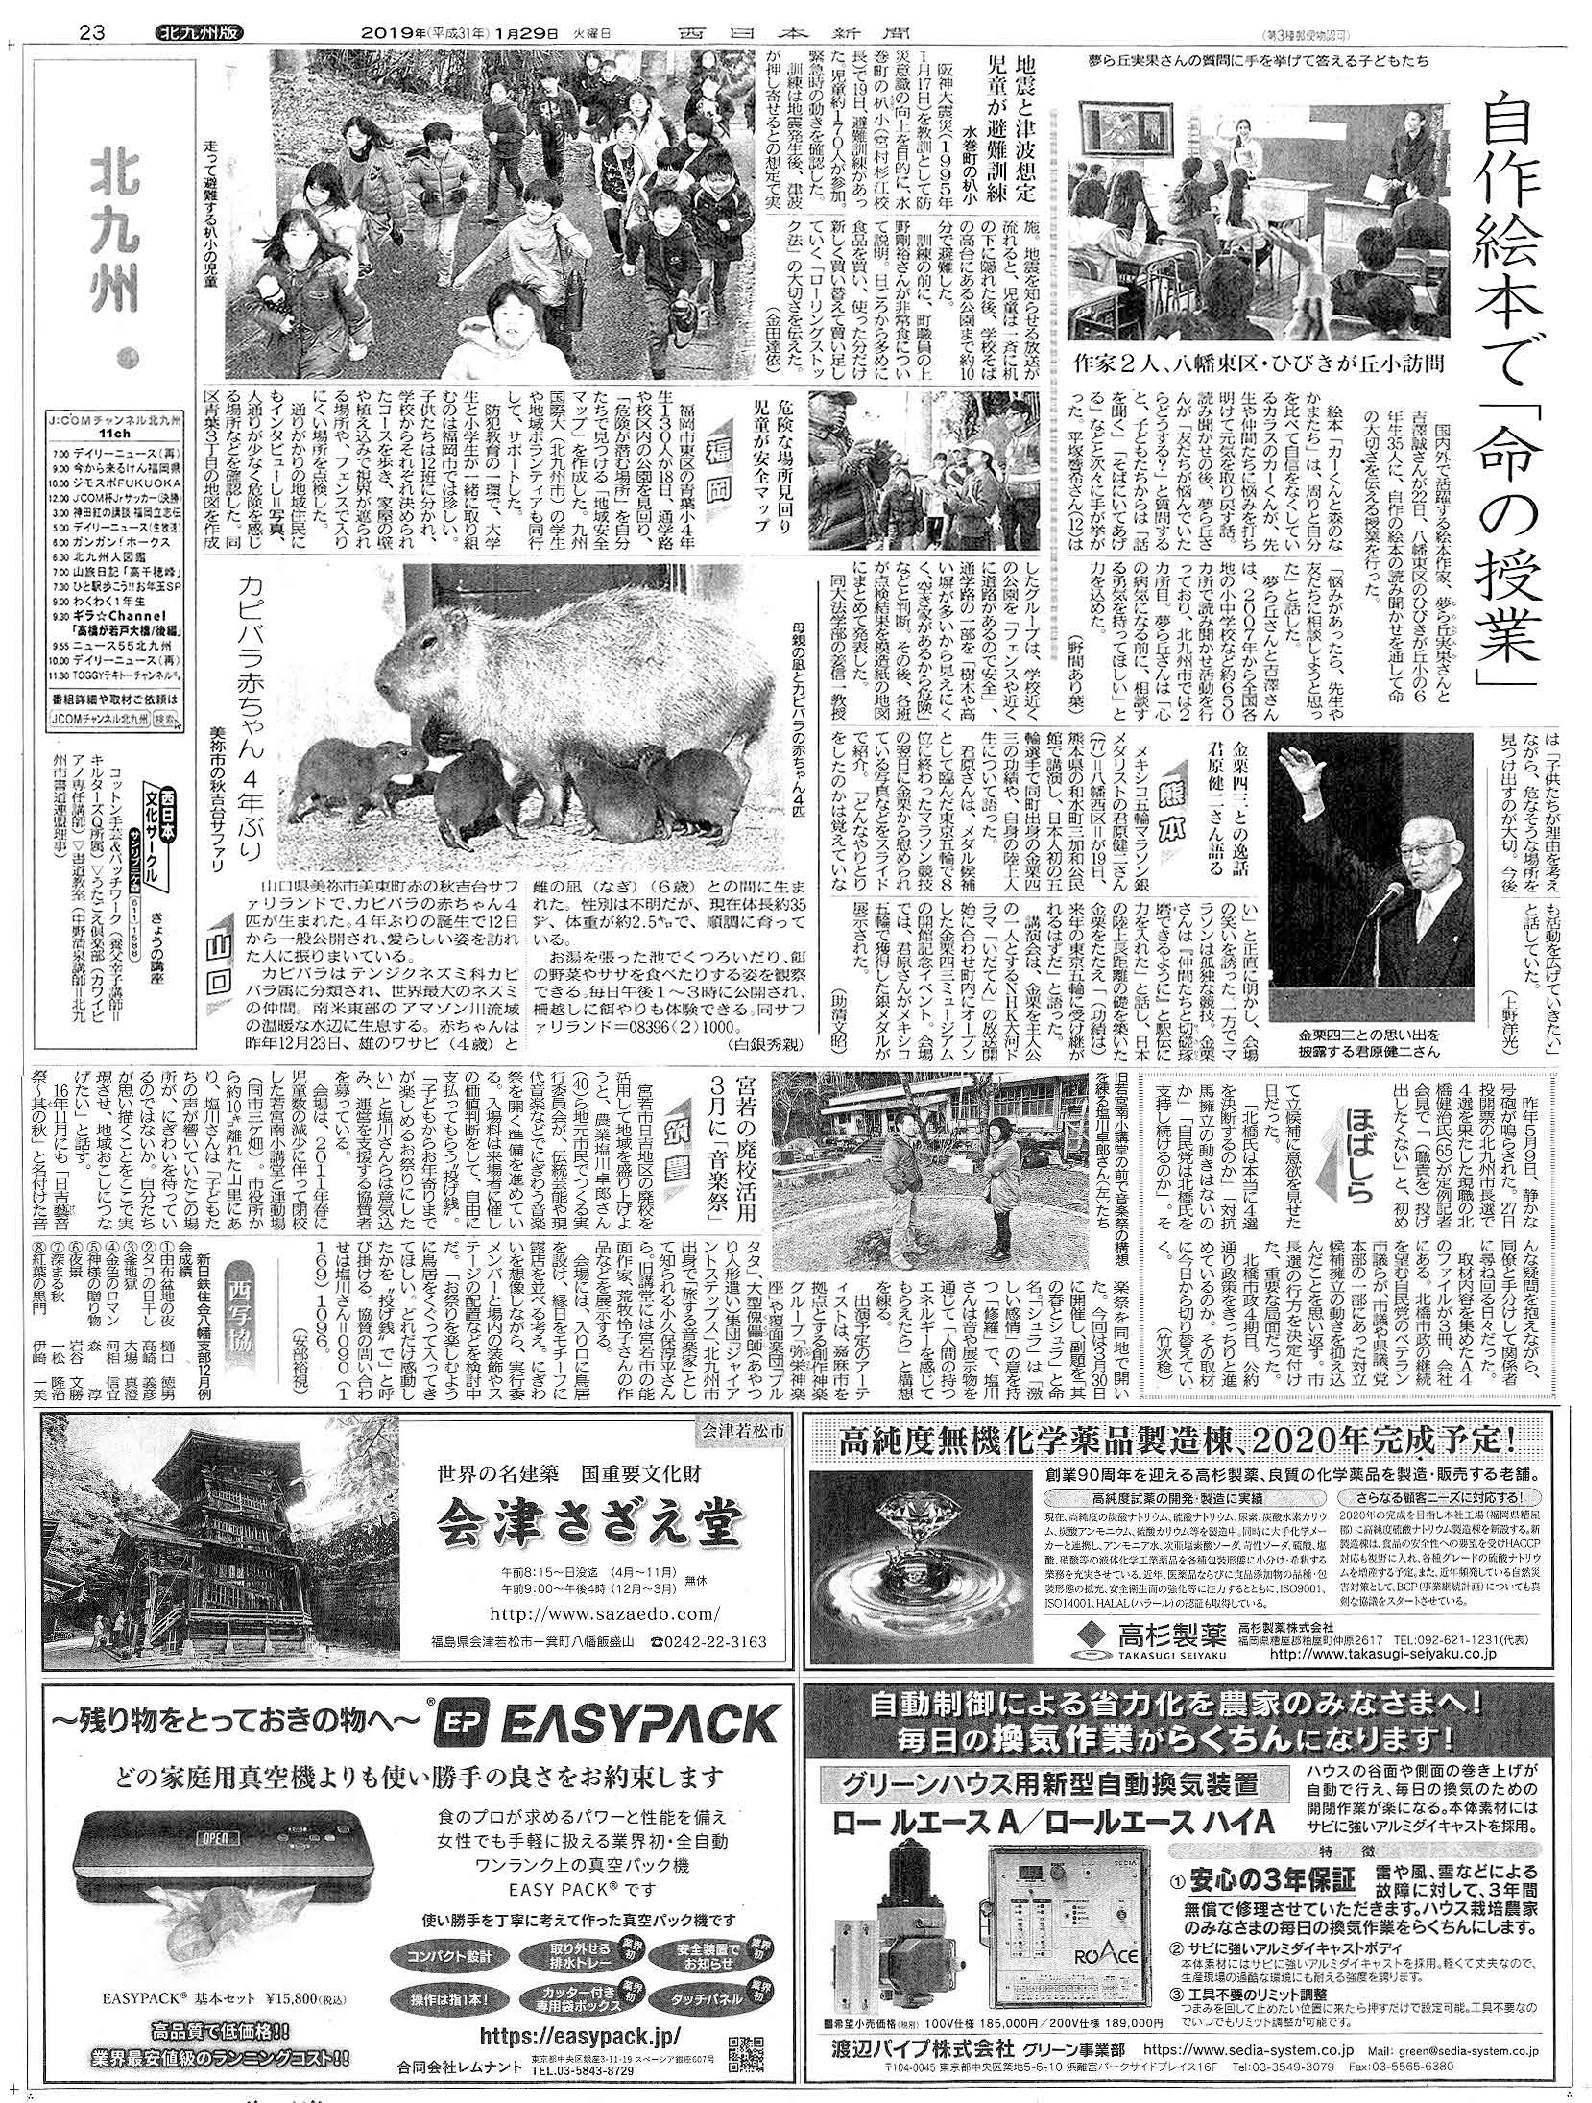 西日本新聞様にご紹介いただきました